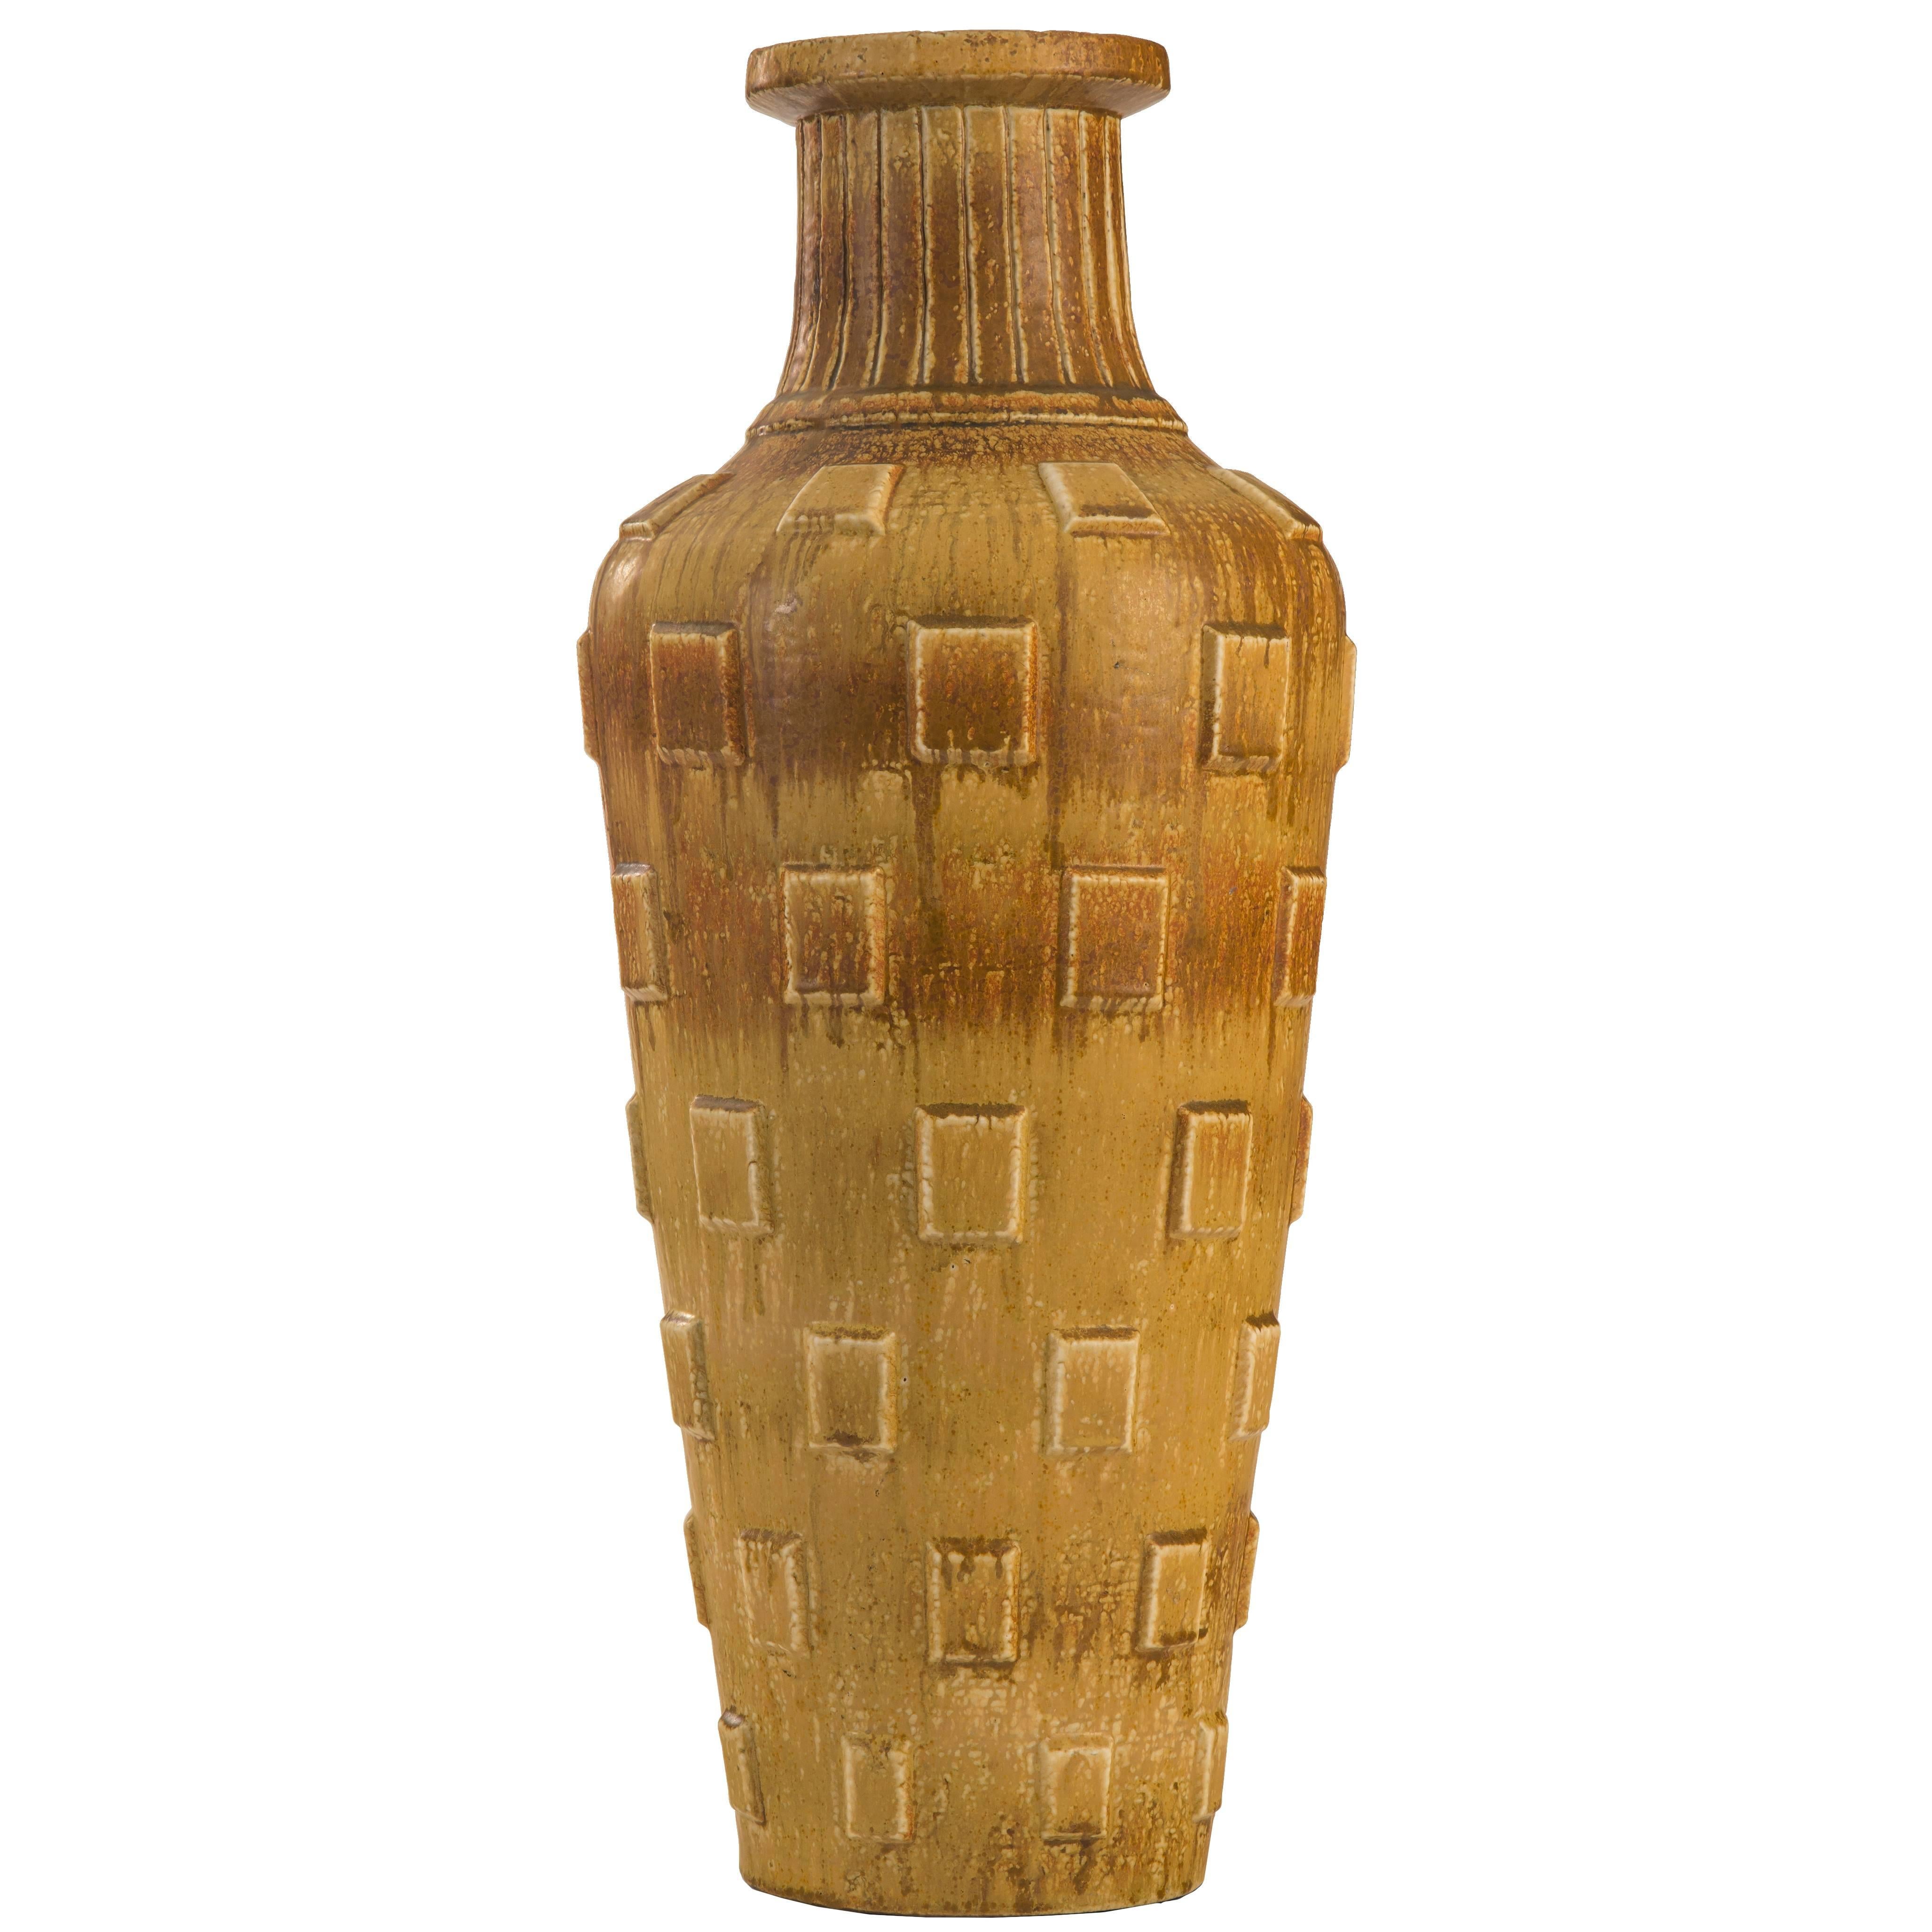 Gunnar Nylund for Rörstrand, Monumental Swedish Glazed Stoneware Vase